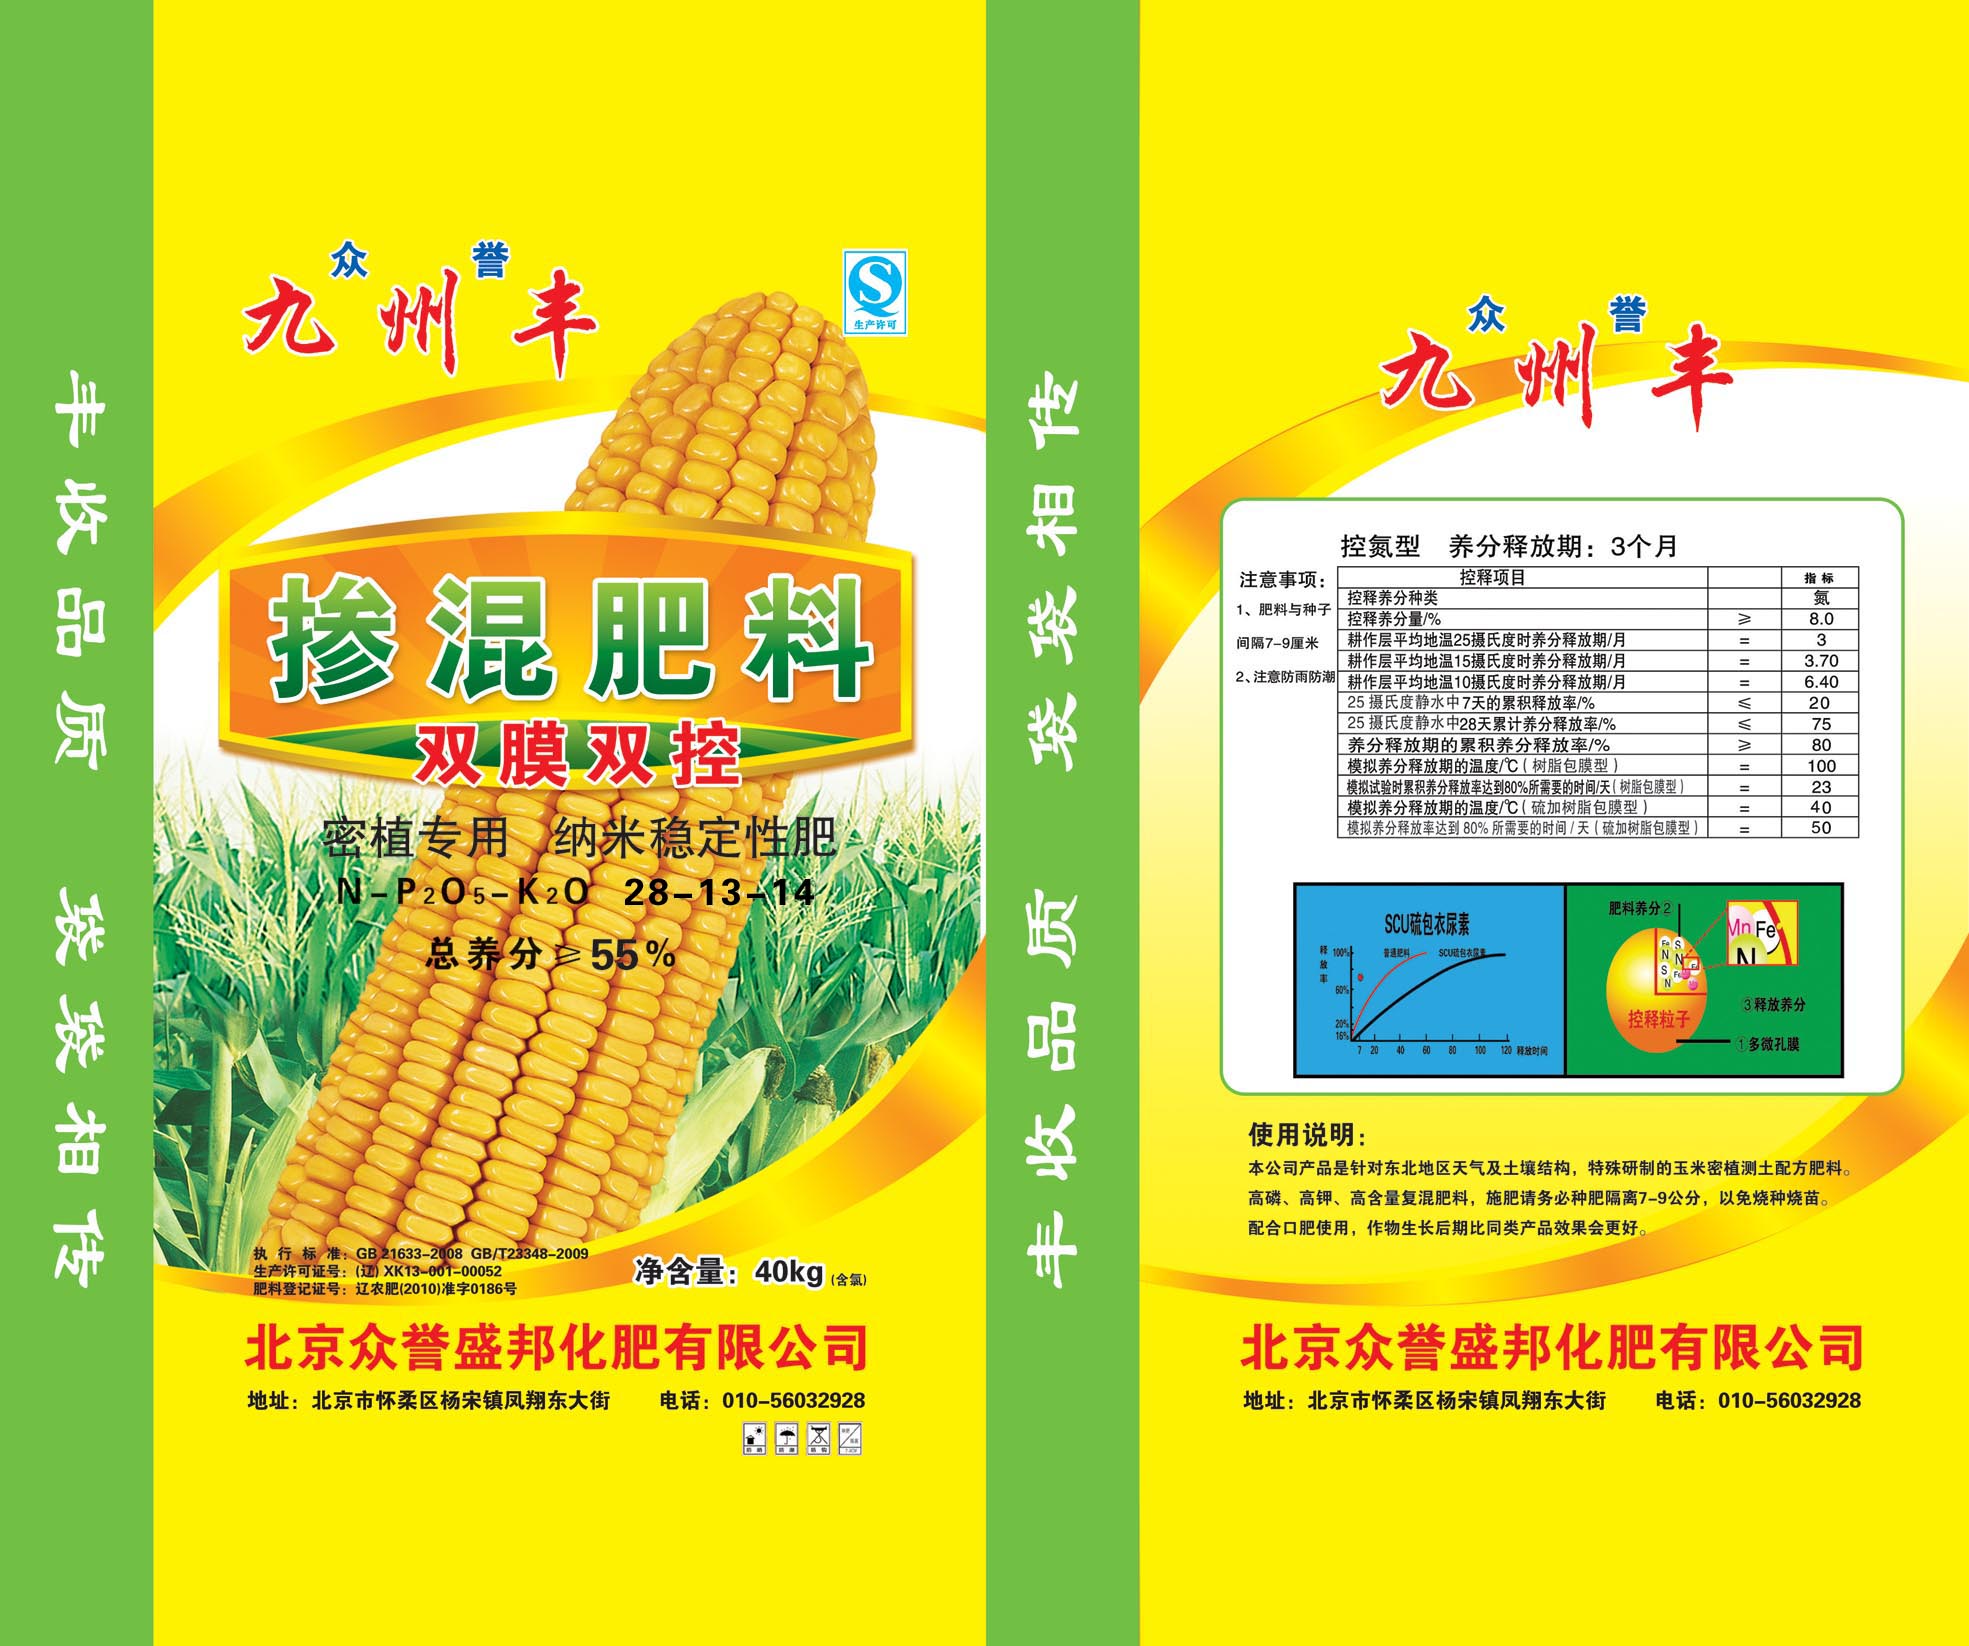 众誉九州丰掺混双膜双控 密植专用 纳米稳定性肥 北京众誉盛邦化肥有限公司55%(40kg控）